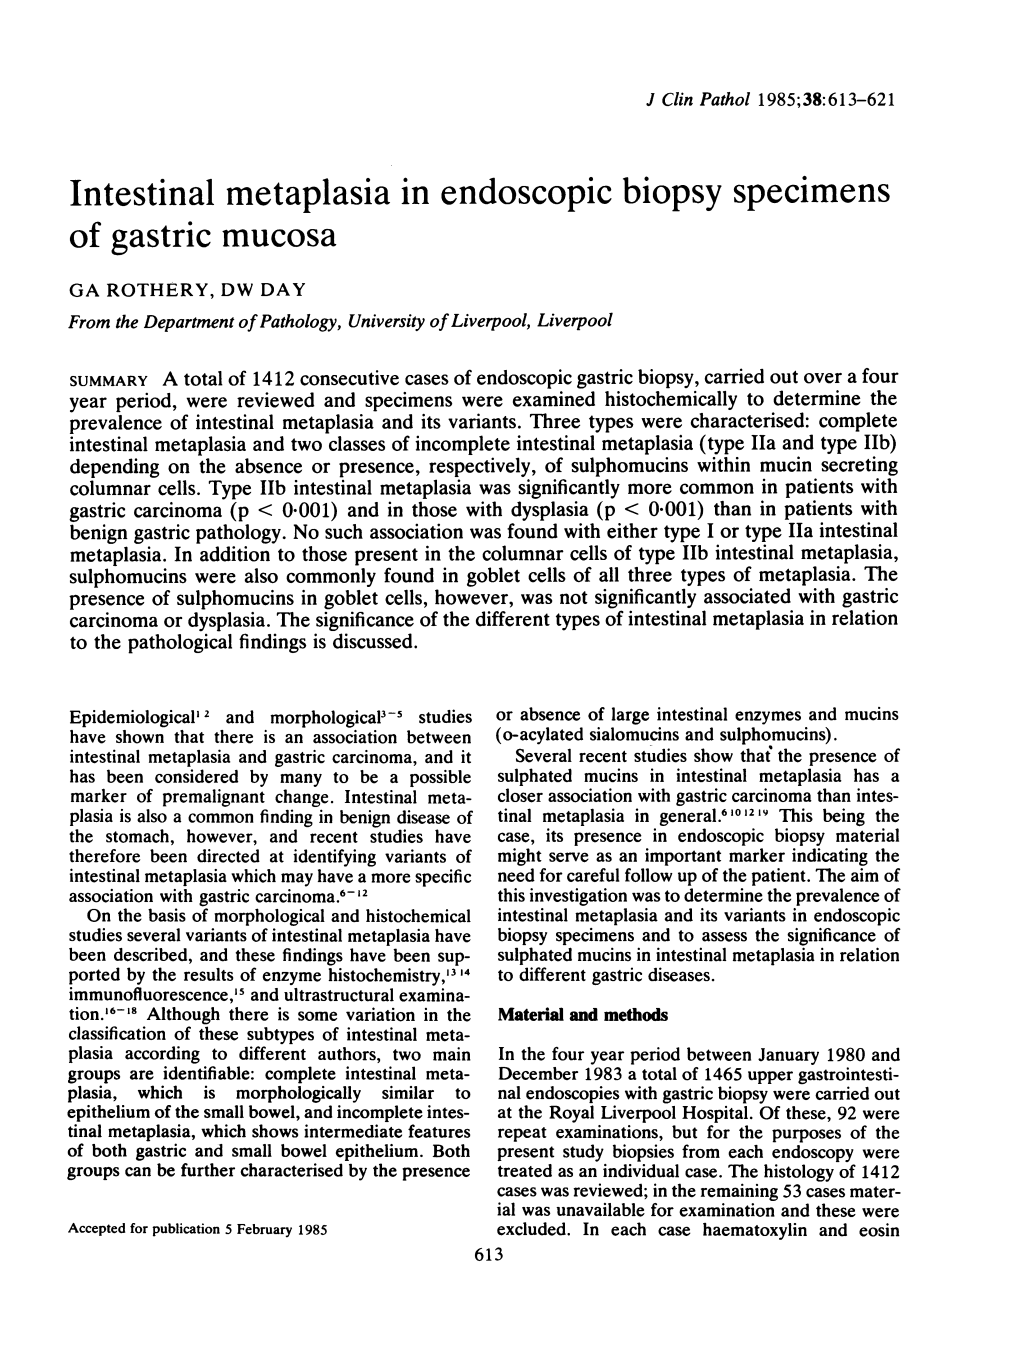 Intestinal Metaplasia in Endoscopic Biopsy Specimens of Gastric Mucosa